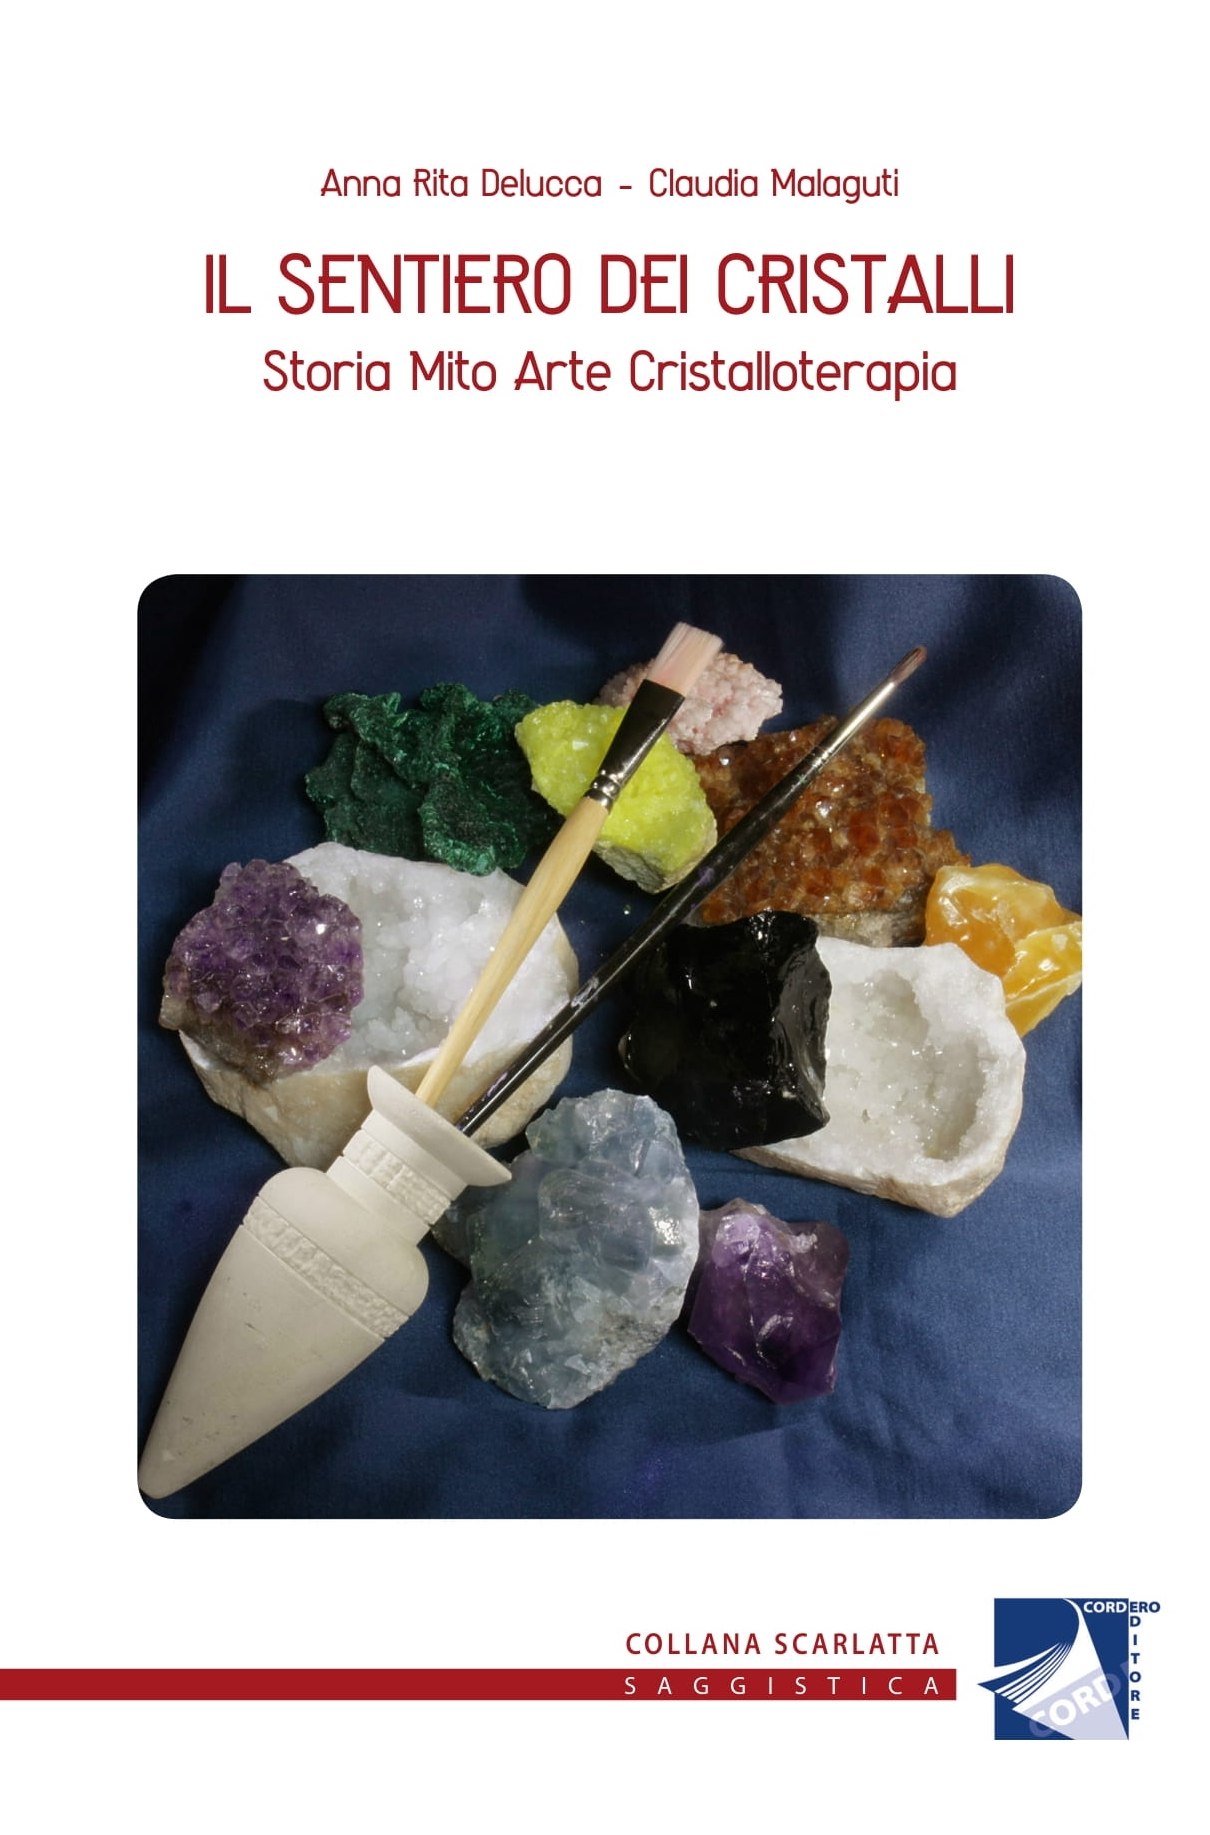 Copertina del libro' Il sentiero dei  Cristalli - Storia mito arte cristalloterapia' . Foto di  Luca Donati (2019)   